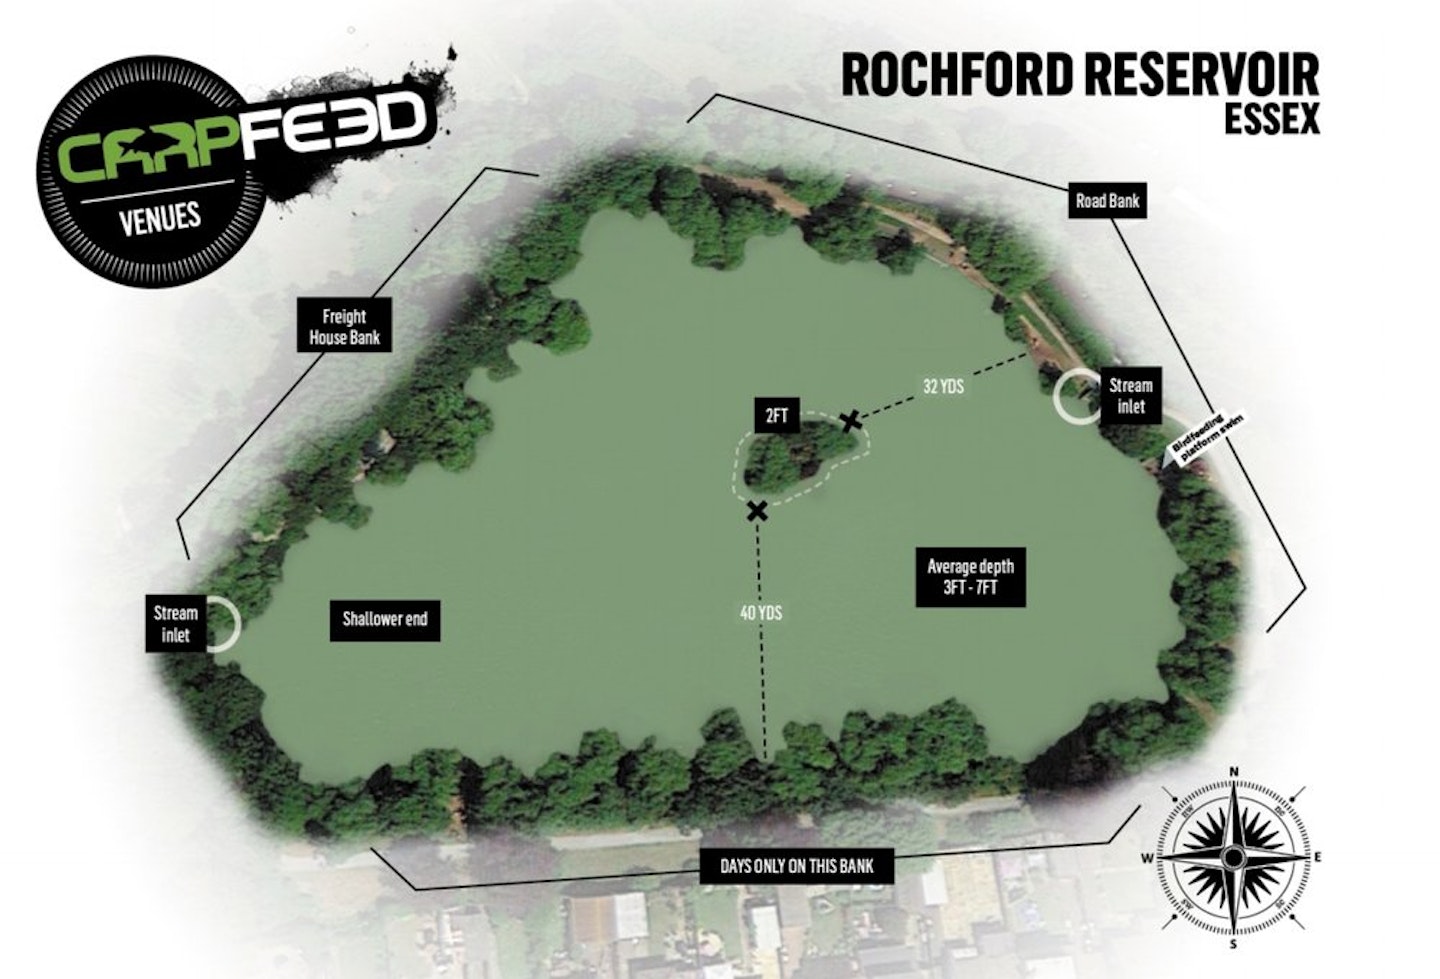 Rochford Reservoir